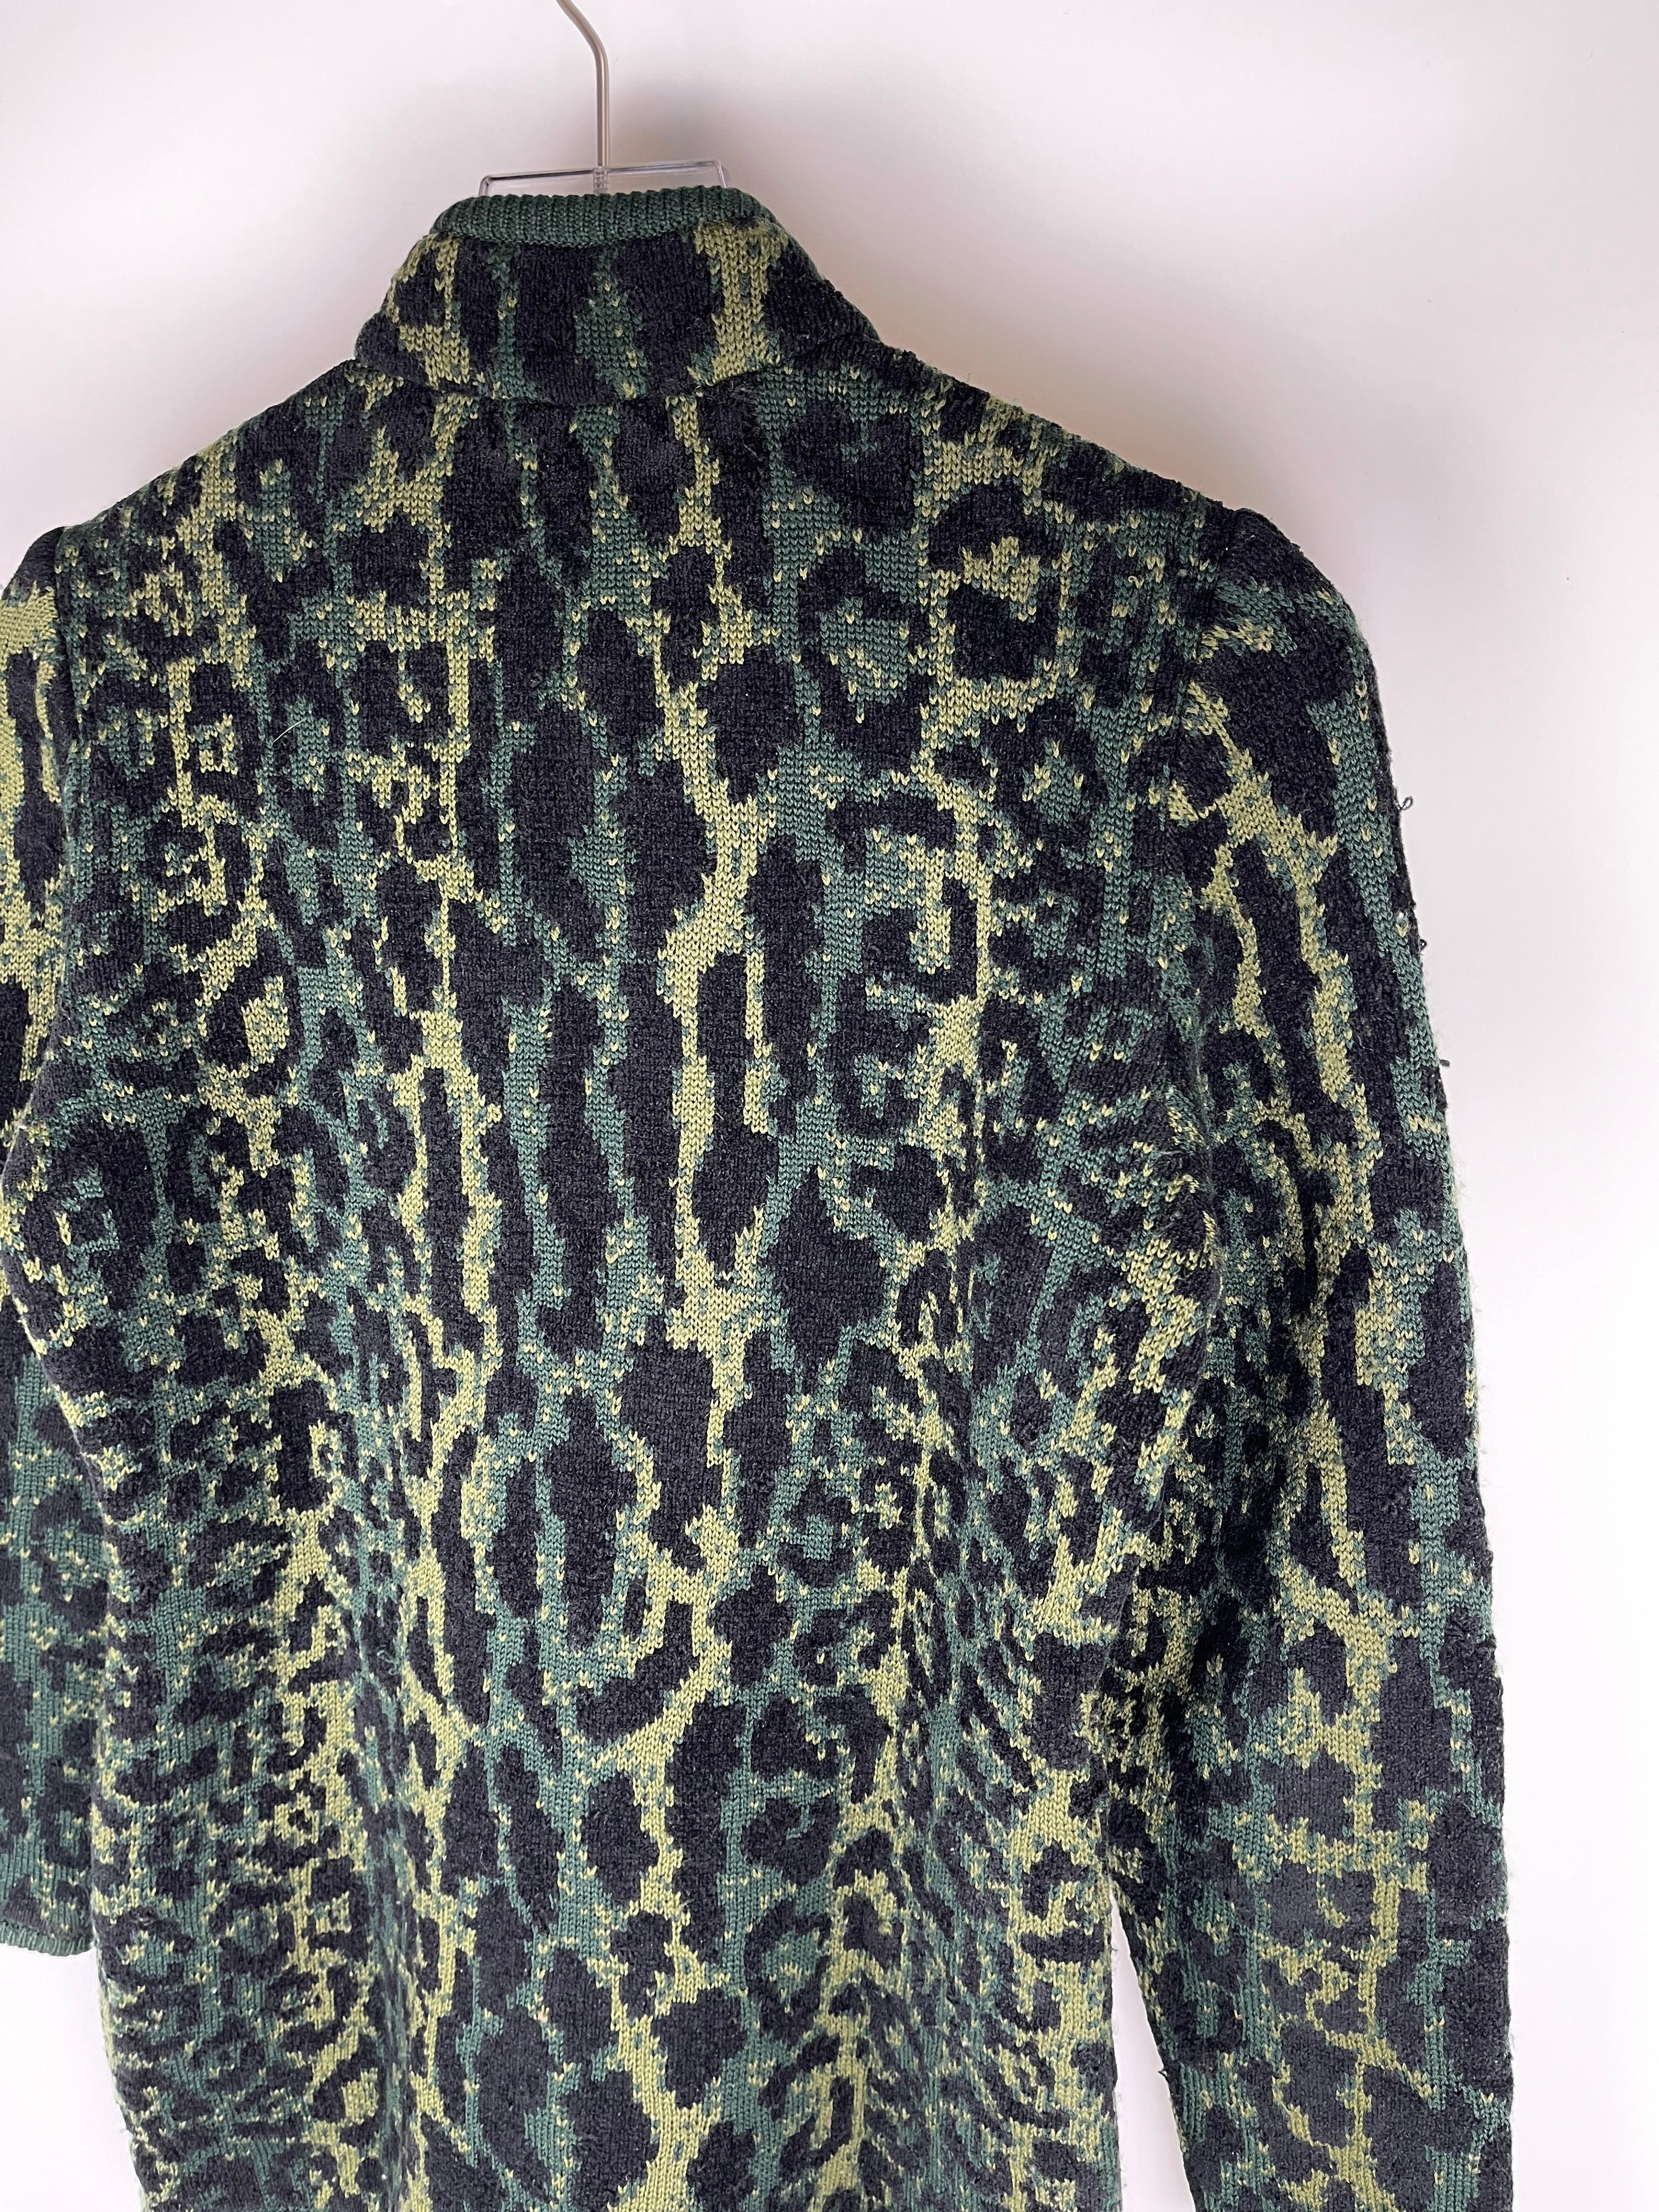 Vintage-Stück aus der Linie Yves Saint Laurent.

Das Kleidungsstück hat einen Allover-Print mit grünem Schneeleoparden, einen gerippten Saum und einen halben Reißverschluss.

Größe: Medium, passt der Größe nach. Es könnte auch eine Herrengröße von